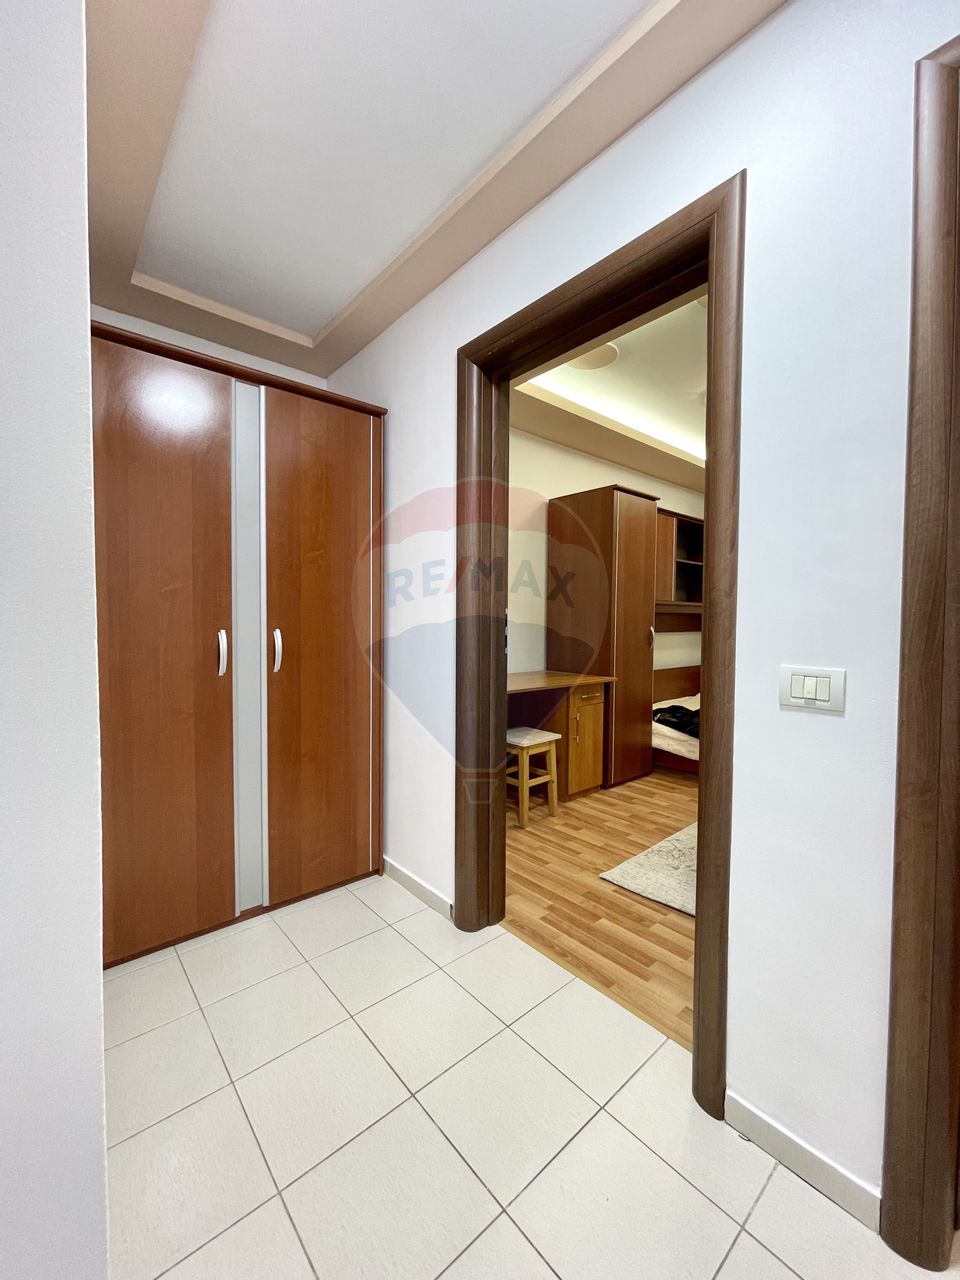 Apartament cu 2 camere de închiriat în zona Fundeni